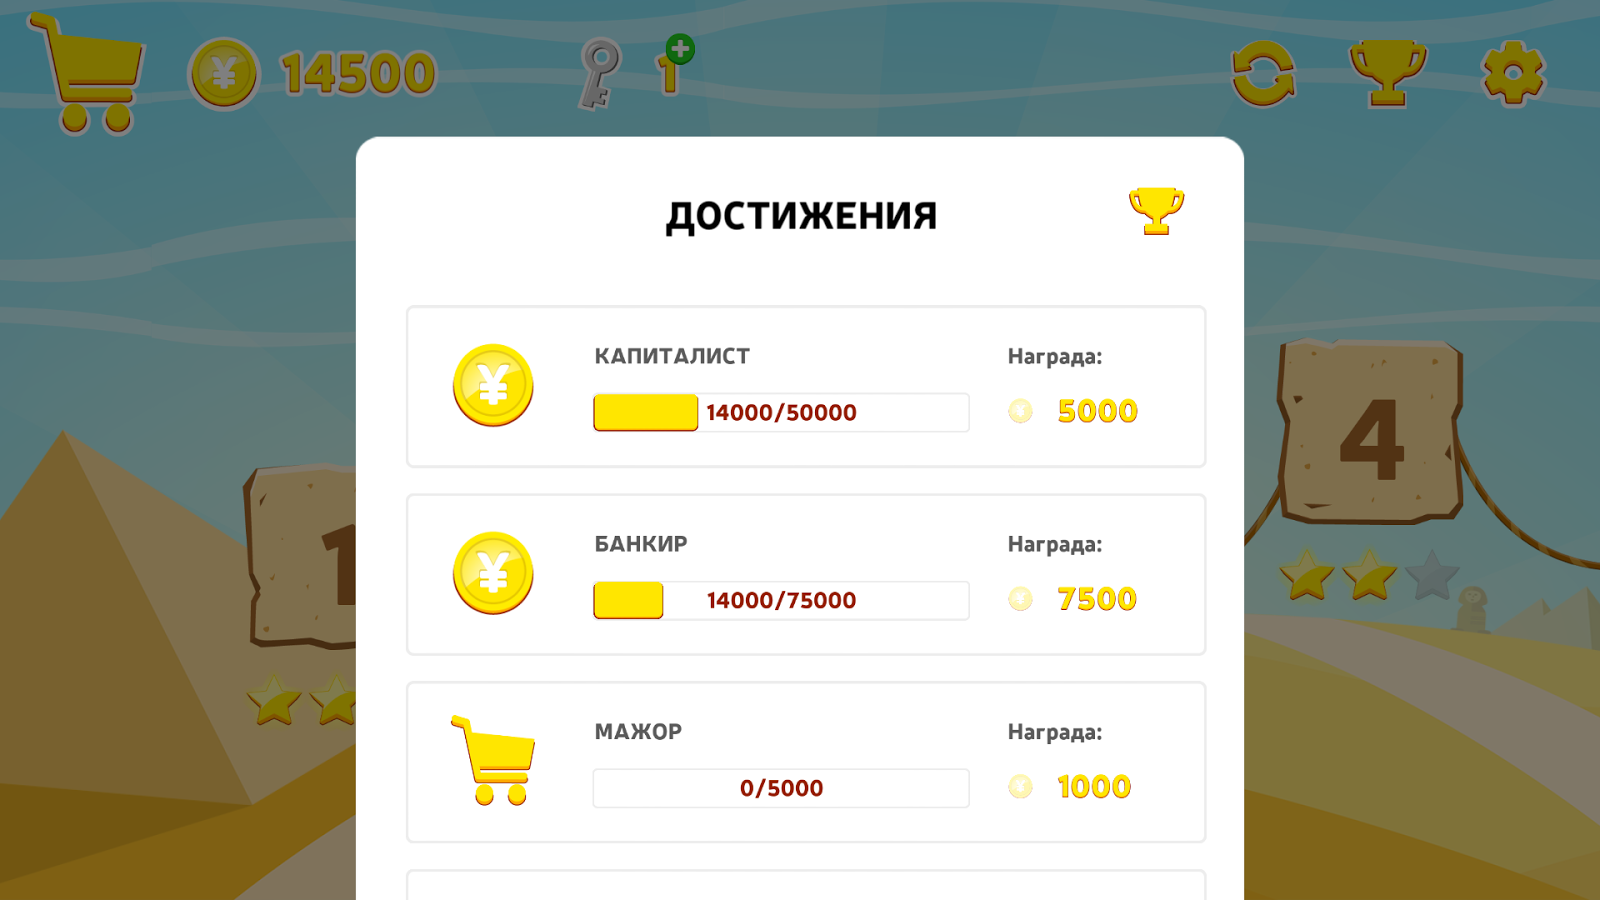 Скачать Perekat Bounce 1.5.1 для Android - 1600 x 900 png 246kB